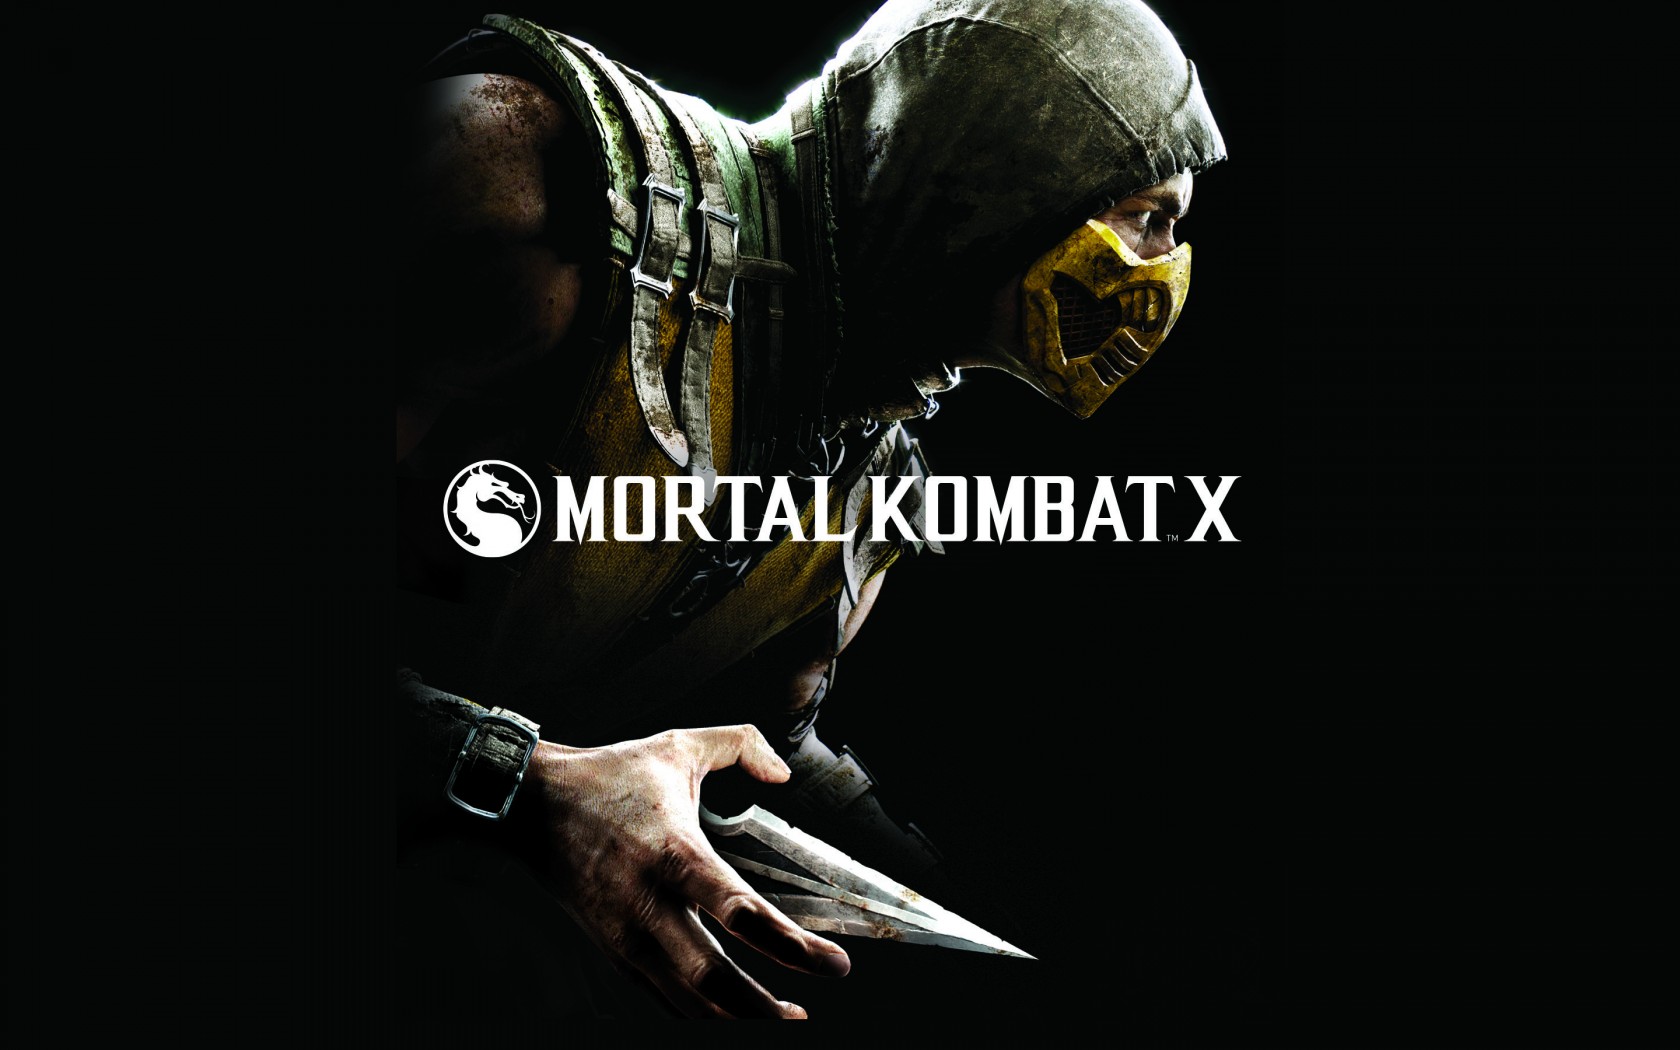 Mortal kombat x updates steam фото 4